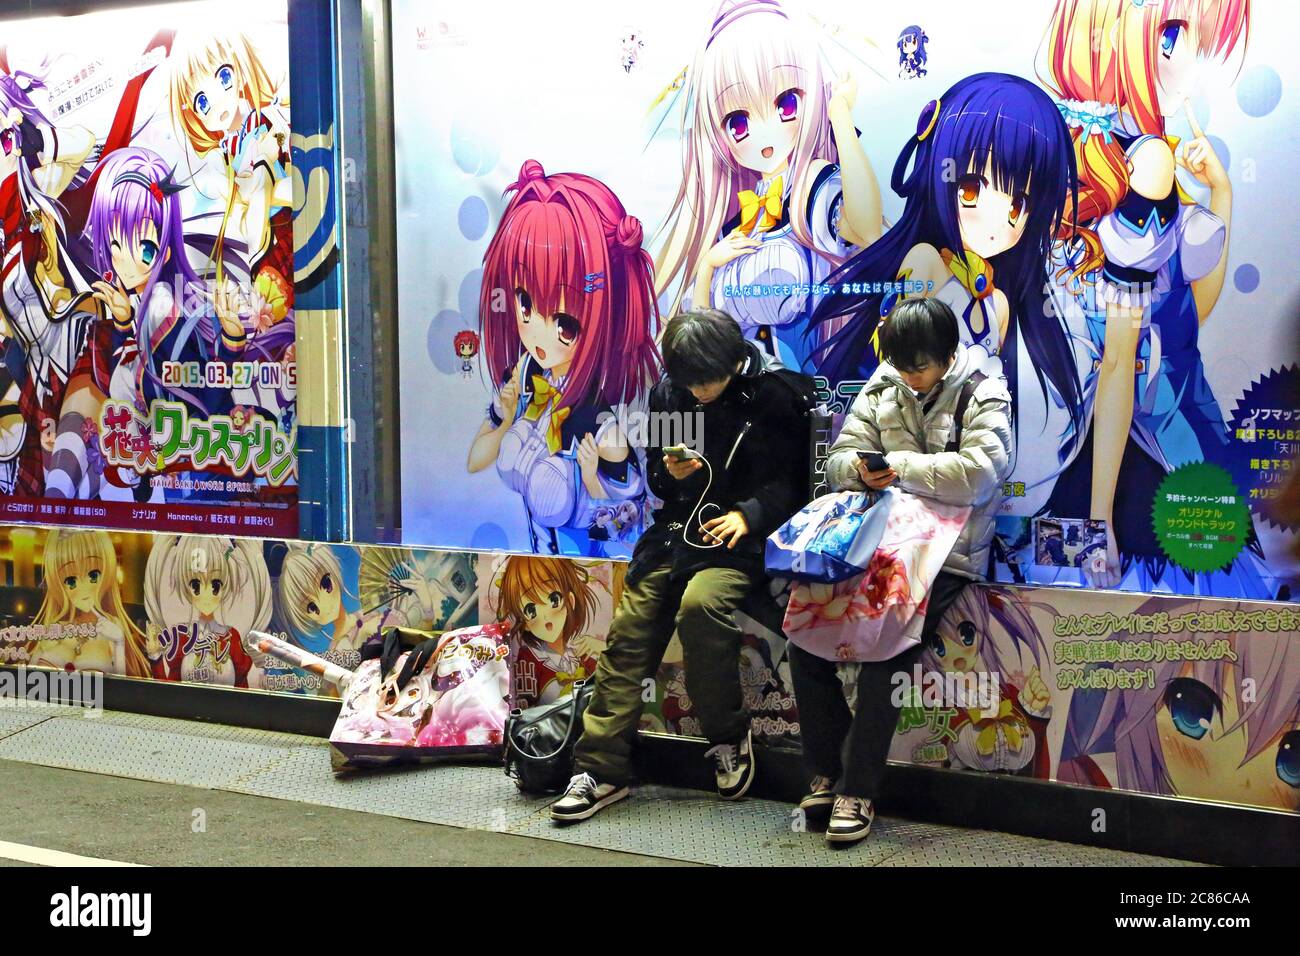 Adolescents dans le quartier Asakusa, Tokyo. Deux adolescents utilisent leurs portables. Sur le mur derrière eux dessins de Manga. Banque D'Images